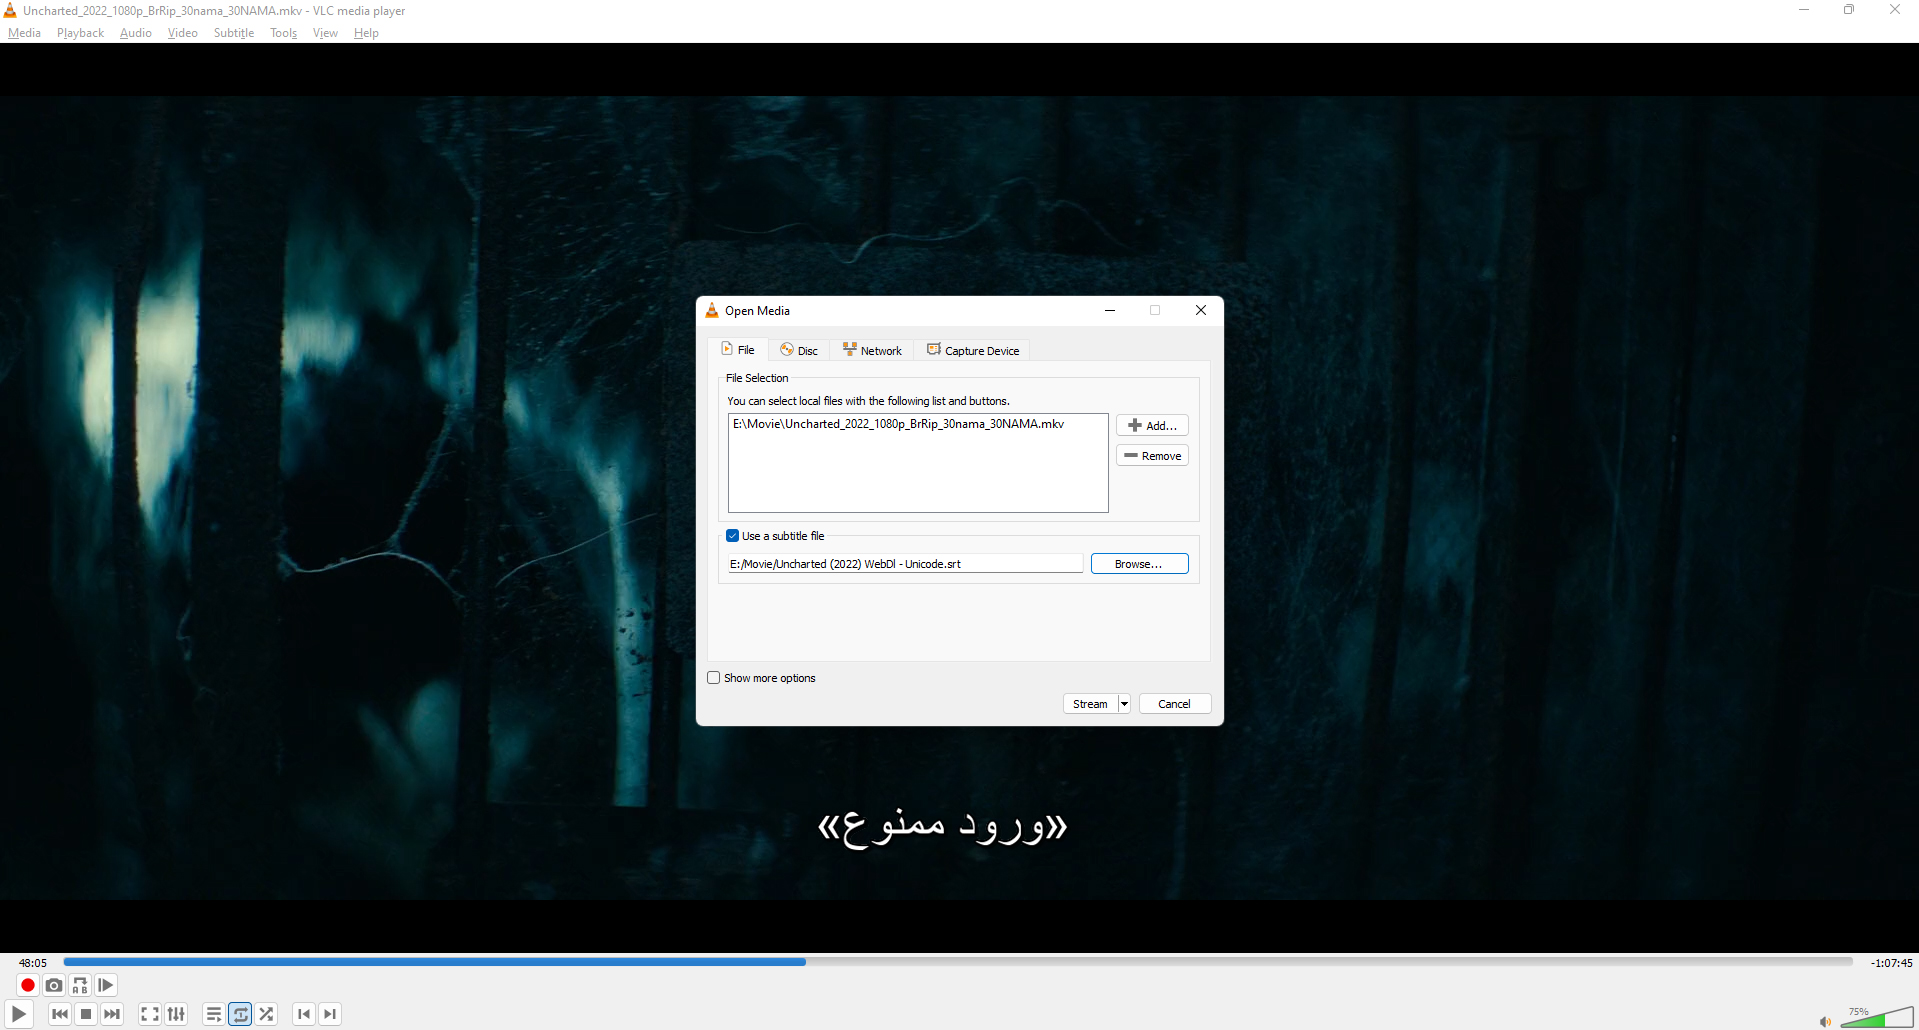 منوی جدیدی که در آن می توان زیرنویس را در VLC به فیلم اضافه کرد